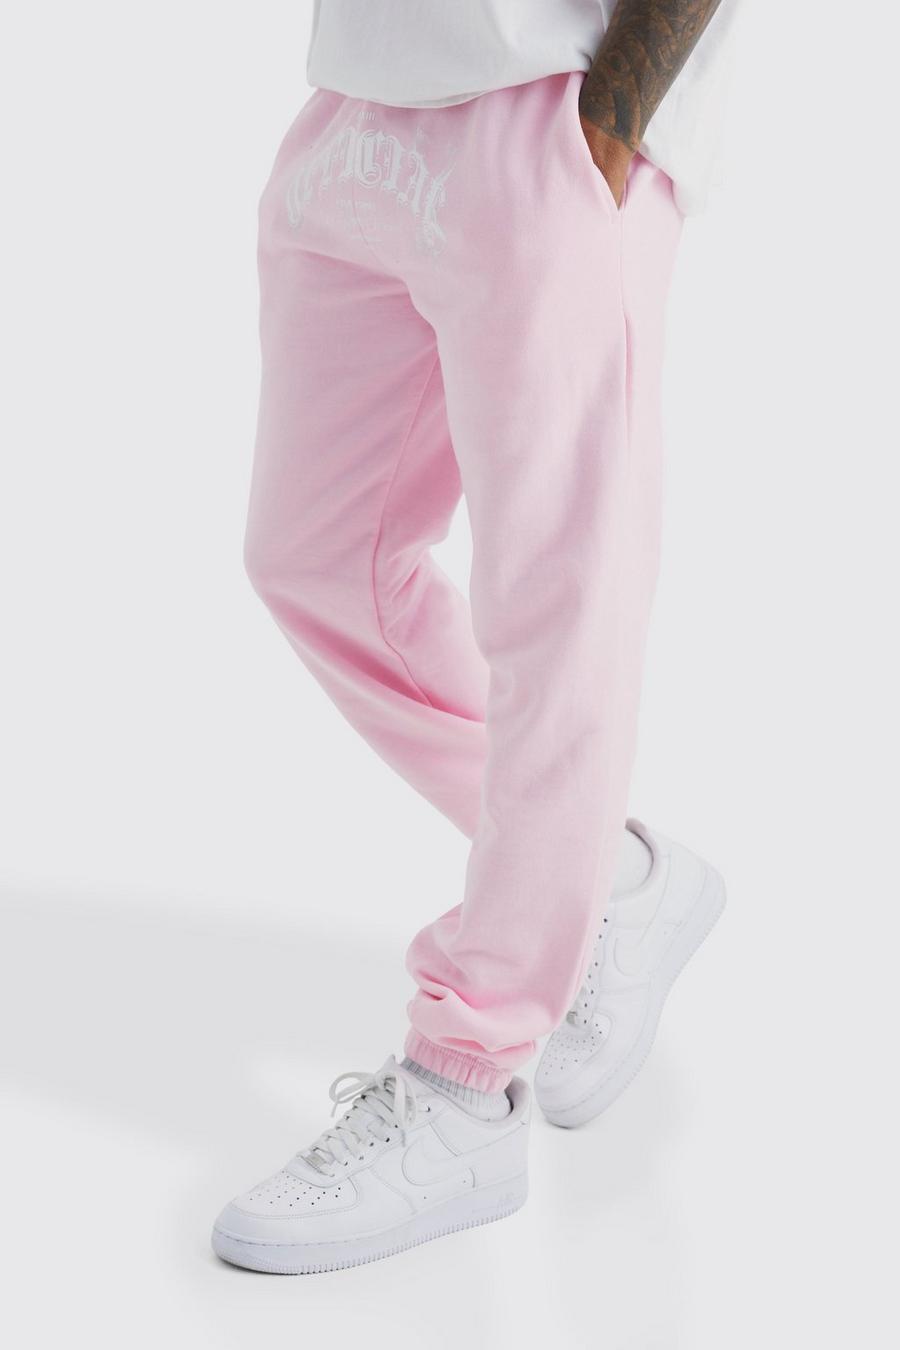 Pantalón deportivo Official con estampado gráfico de humo, Light pink rosa